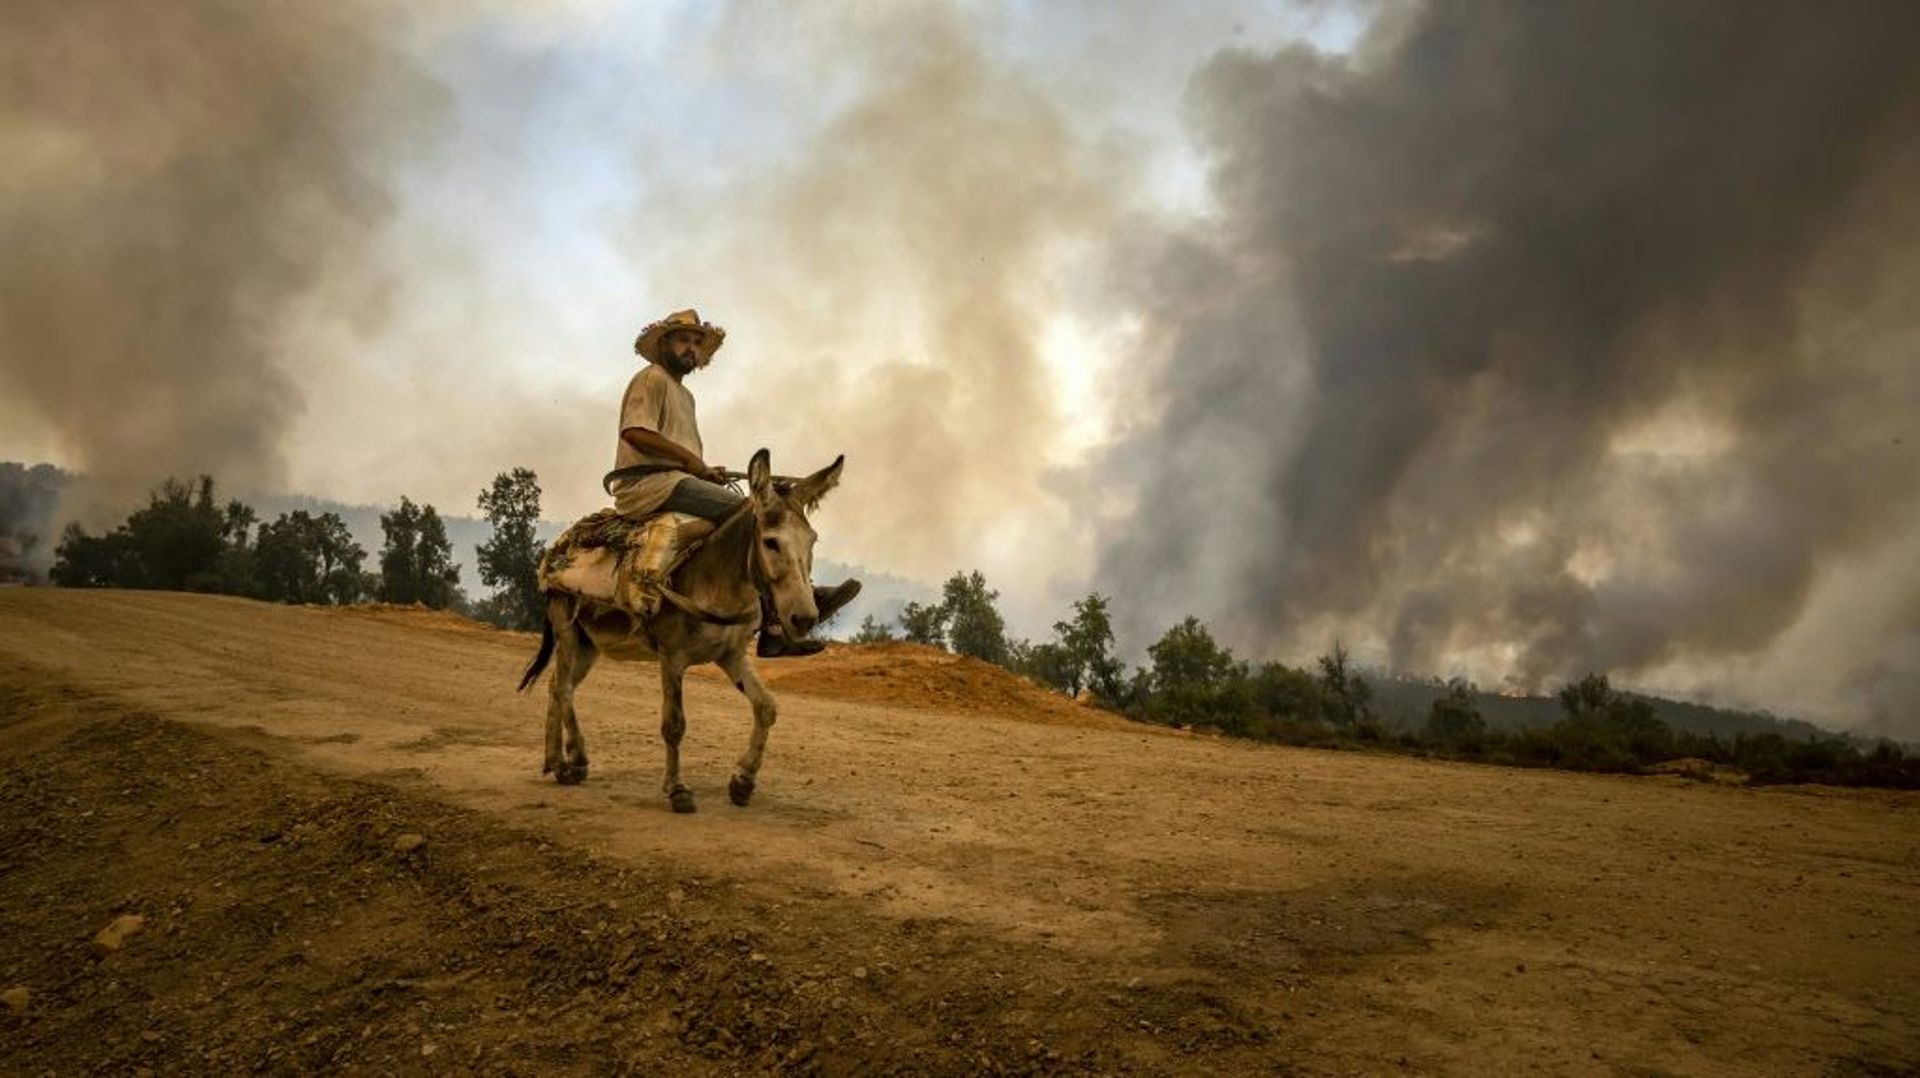 Un villageois émerge d'un nuage de fumée près de Ksar el-Kebir dans la provice marocaine de Larache, en proie à de violents incendies, le 15 juillet 2022